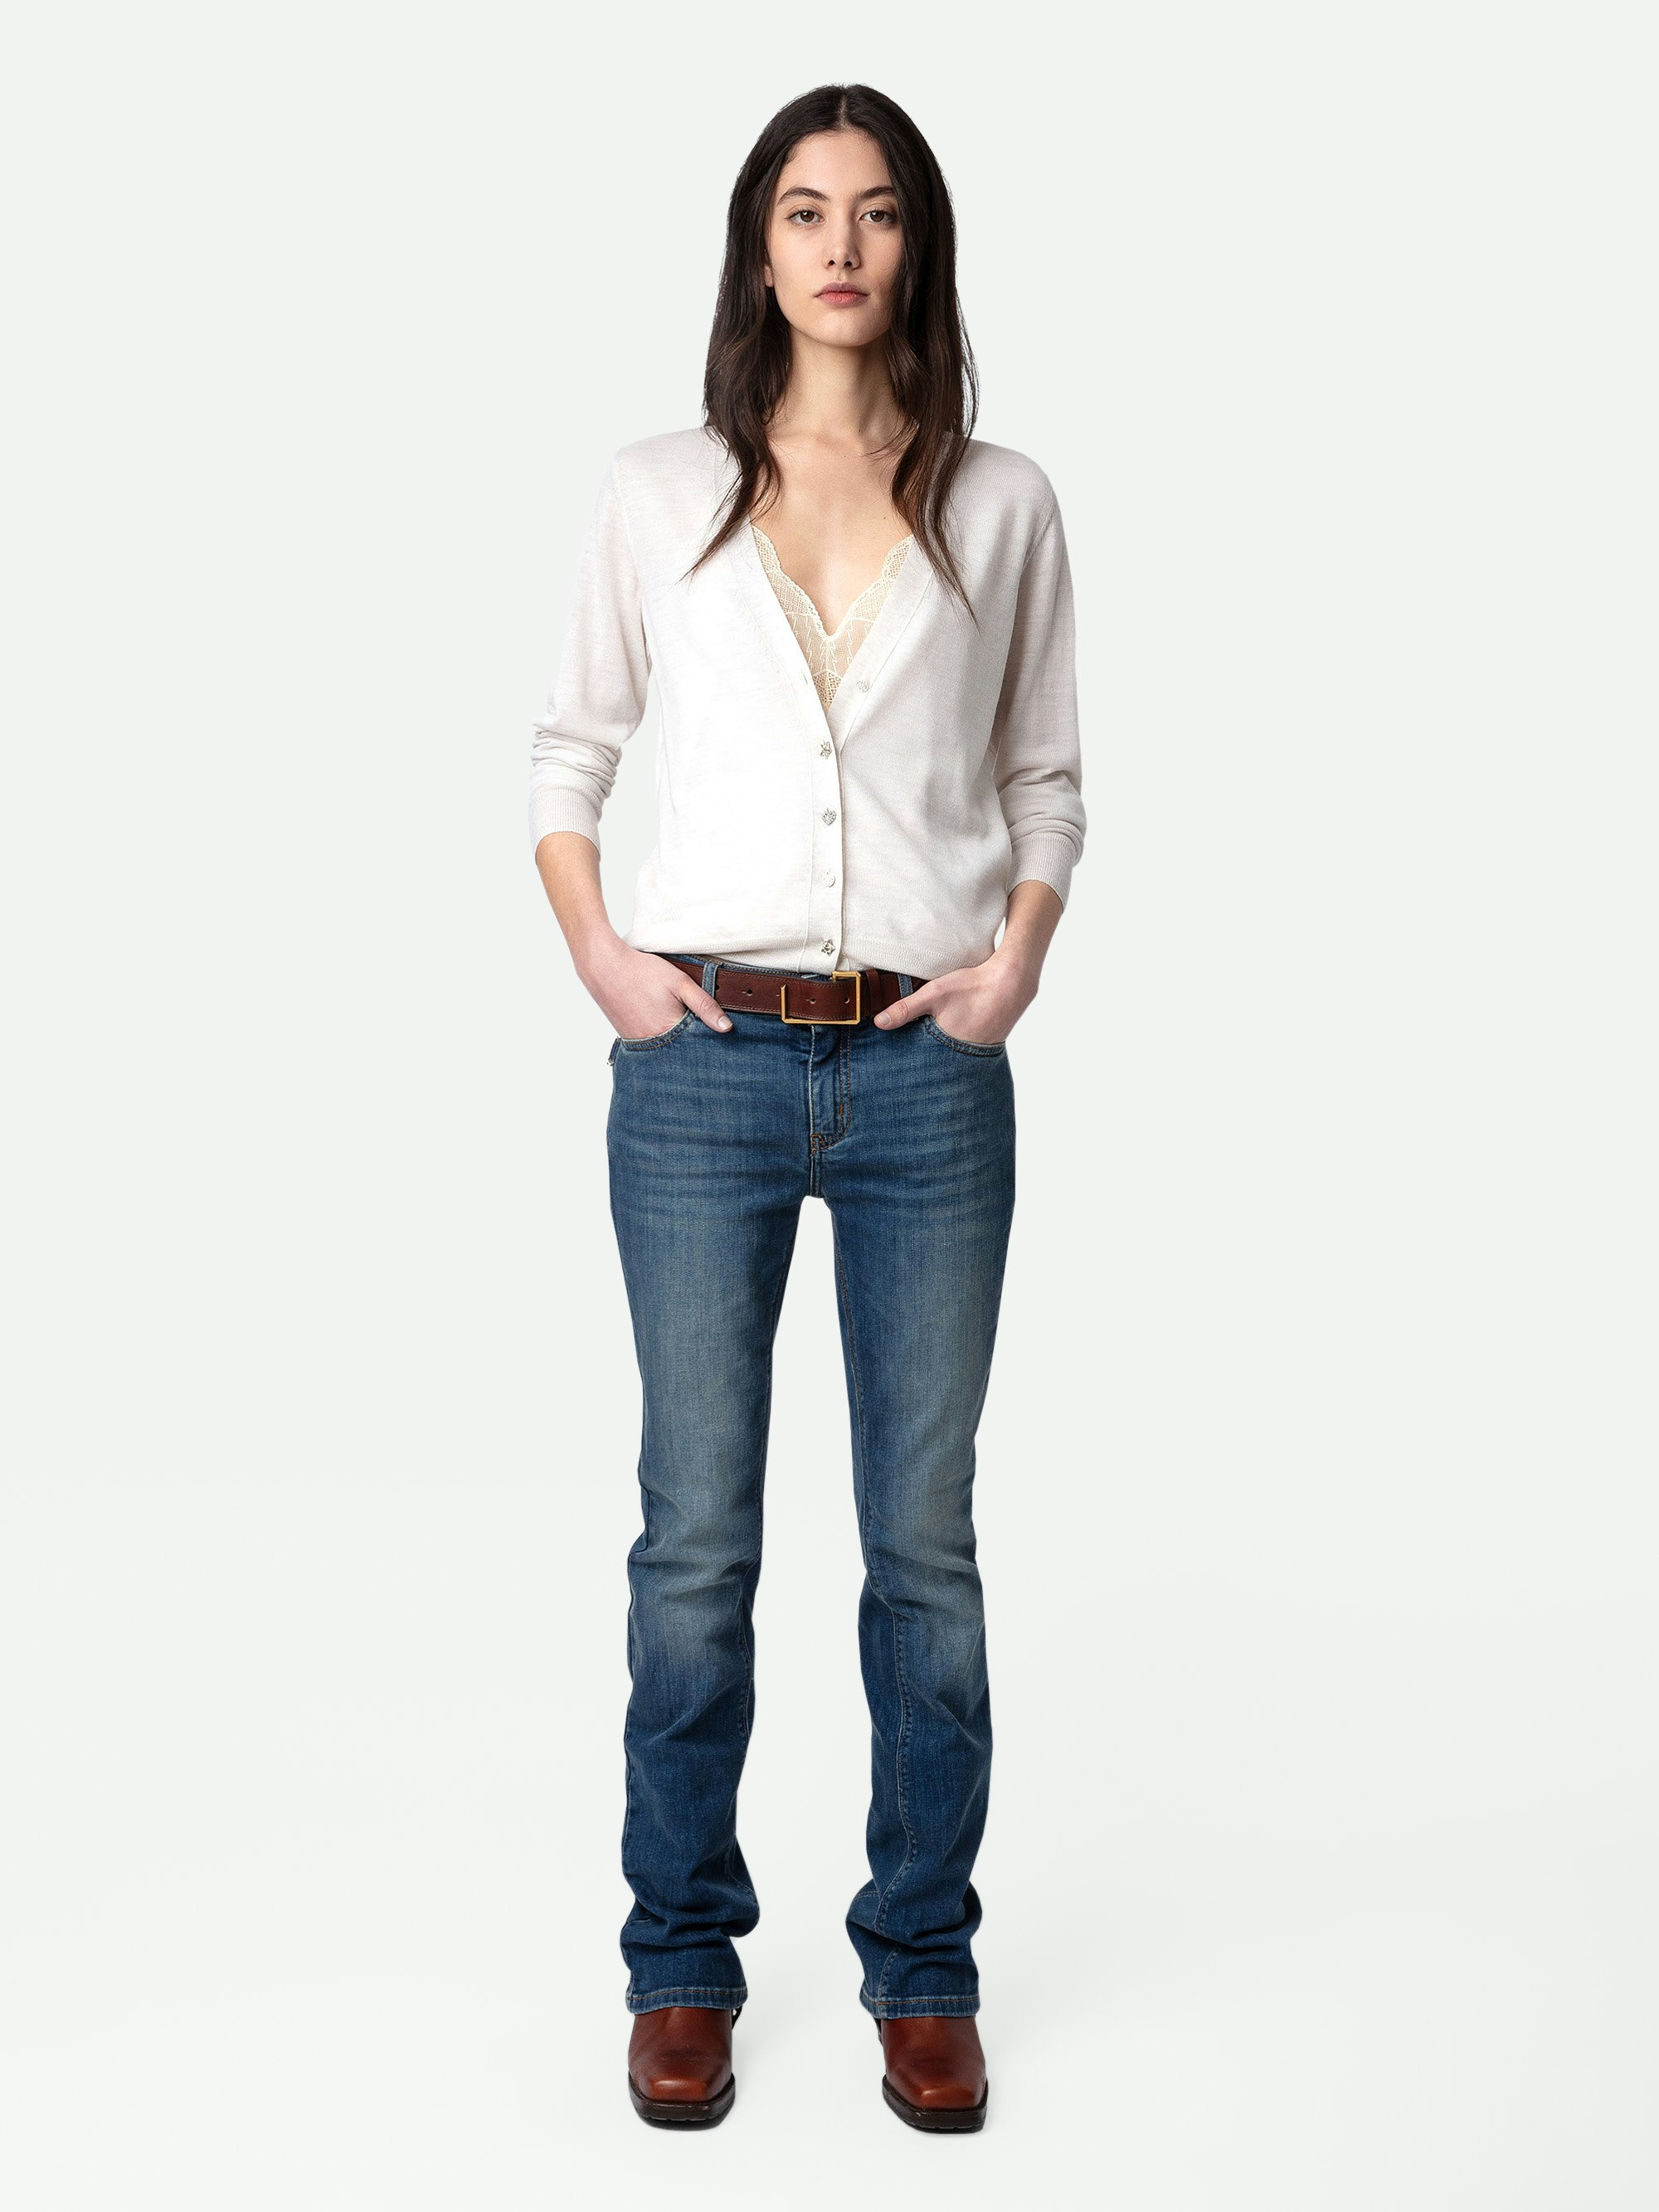 Cardigan Jemmy Bijoux 100% Lana Merino - Cardigan in 100% lana merino grigio chiaro a maniche lunghe e bottoni gioiello con strass.